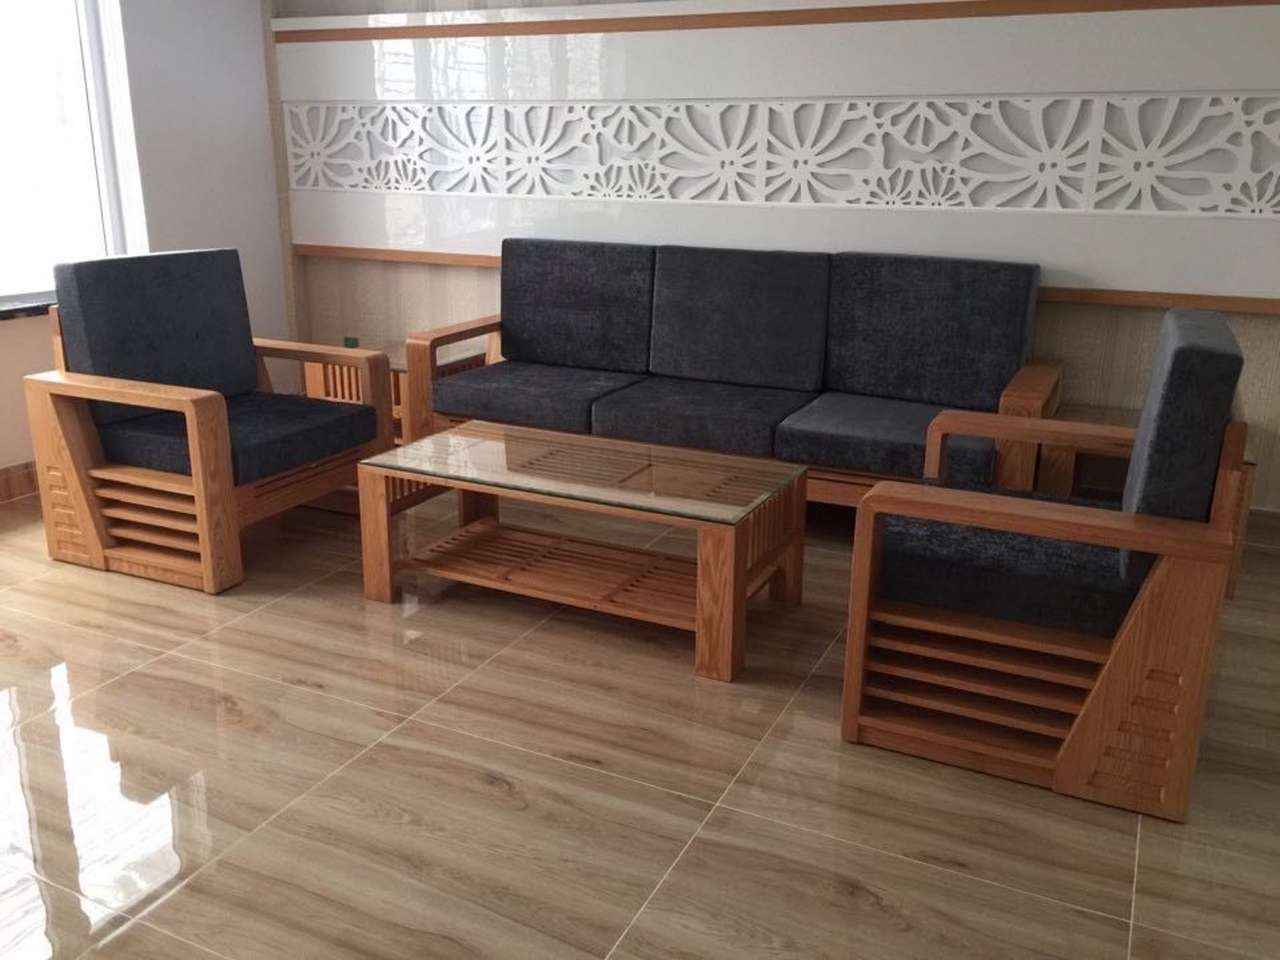 Sofa gỗ Sồi tự nhiên đẹp đơn giản